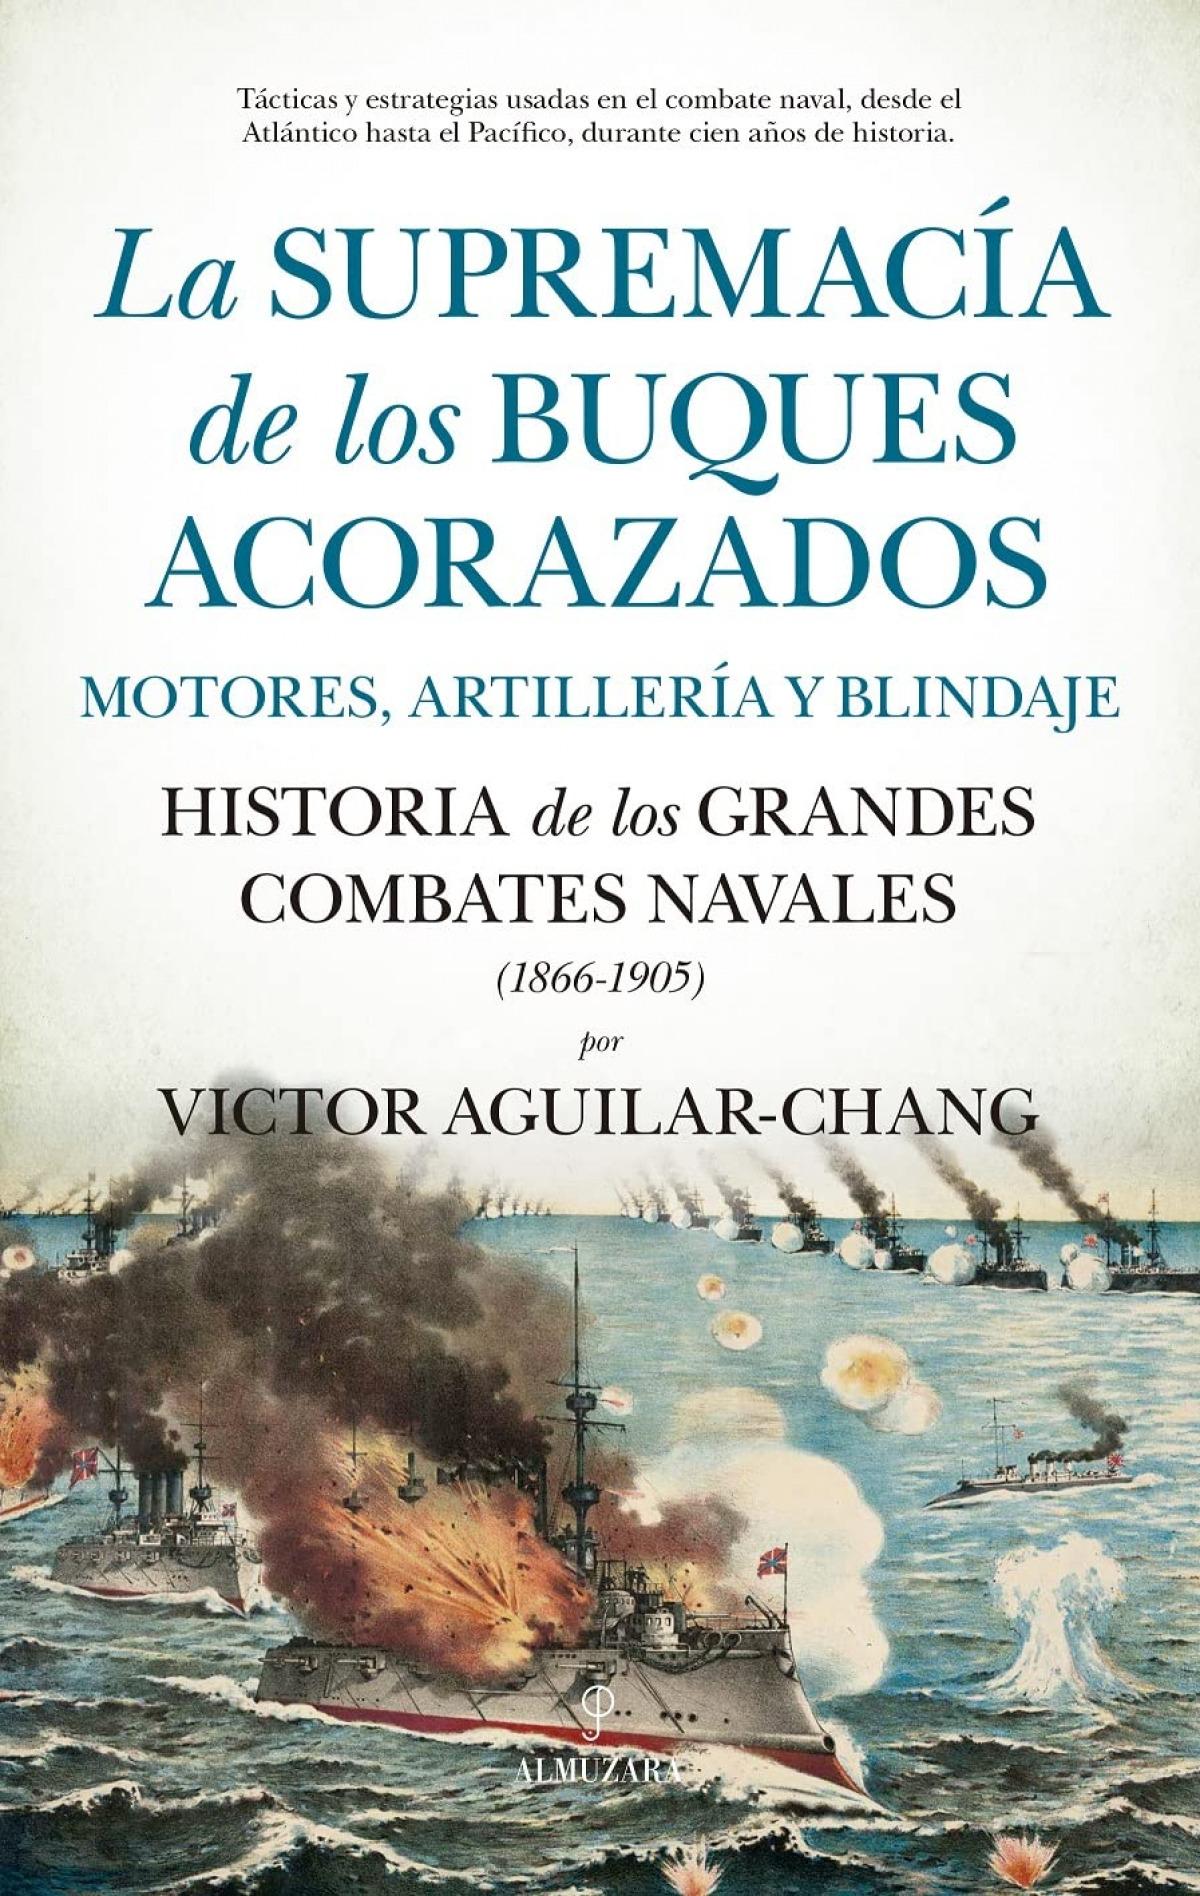 Supremacía de buques acorazados, La "Motores, artillería y blindaje. Historia de los grandes combates navales (1866-1905)"